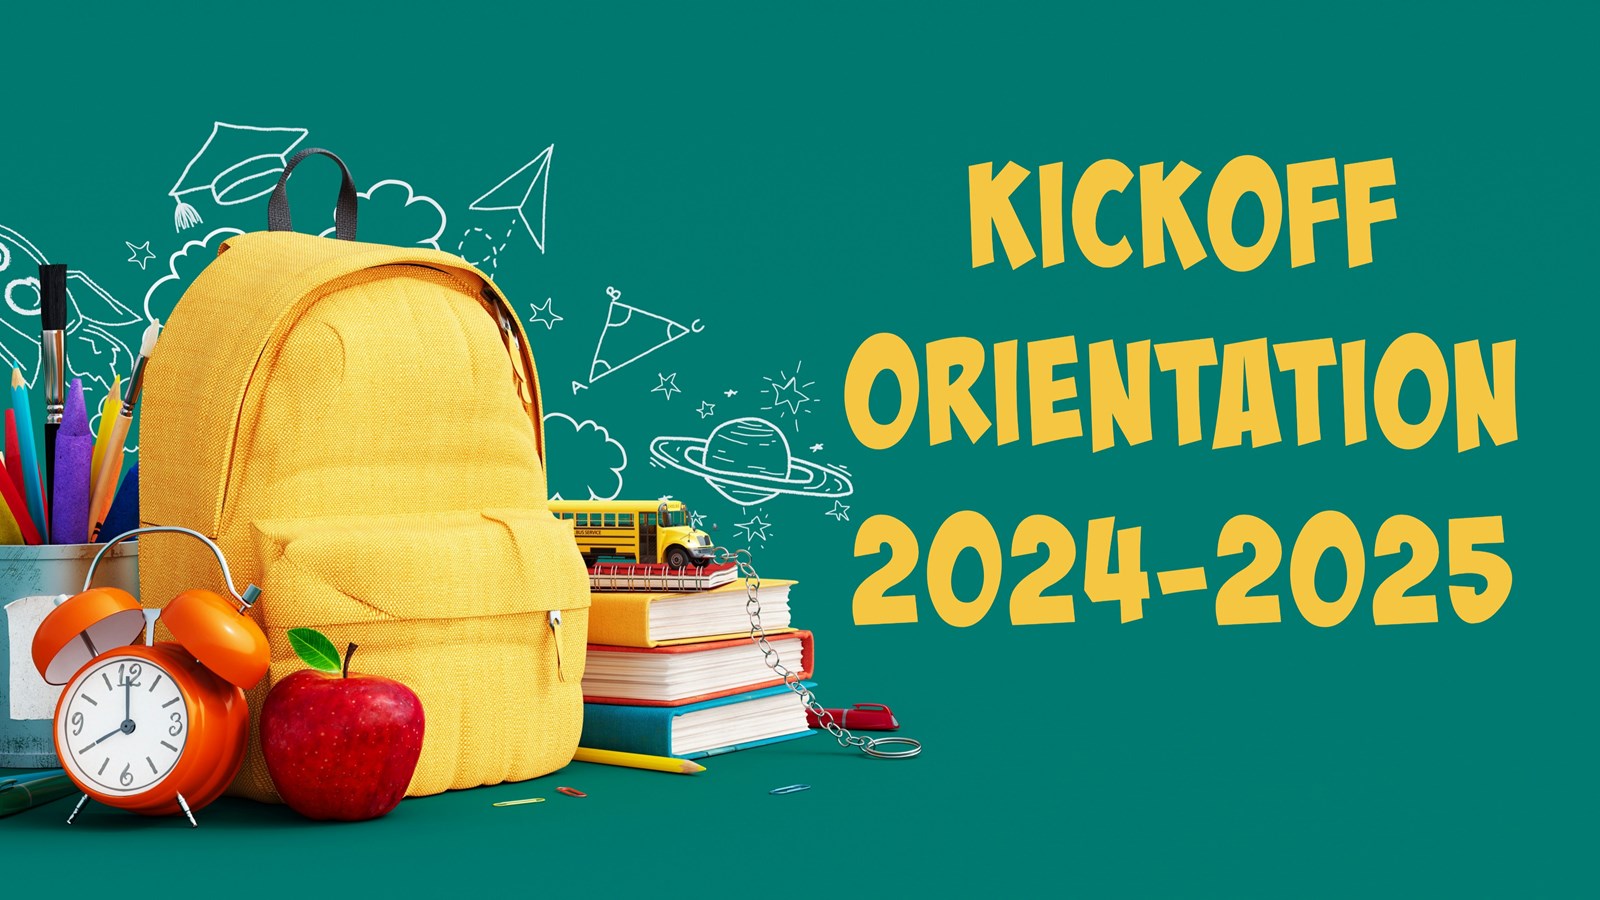 Kickoff Orientation 2024-2025